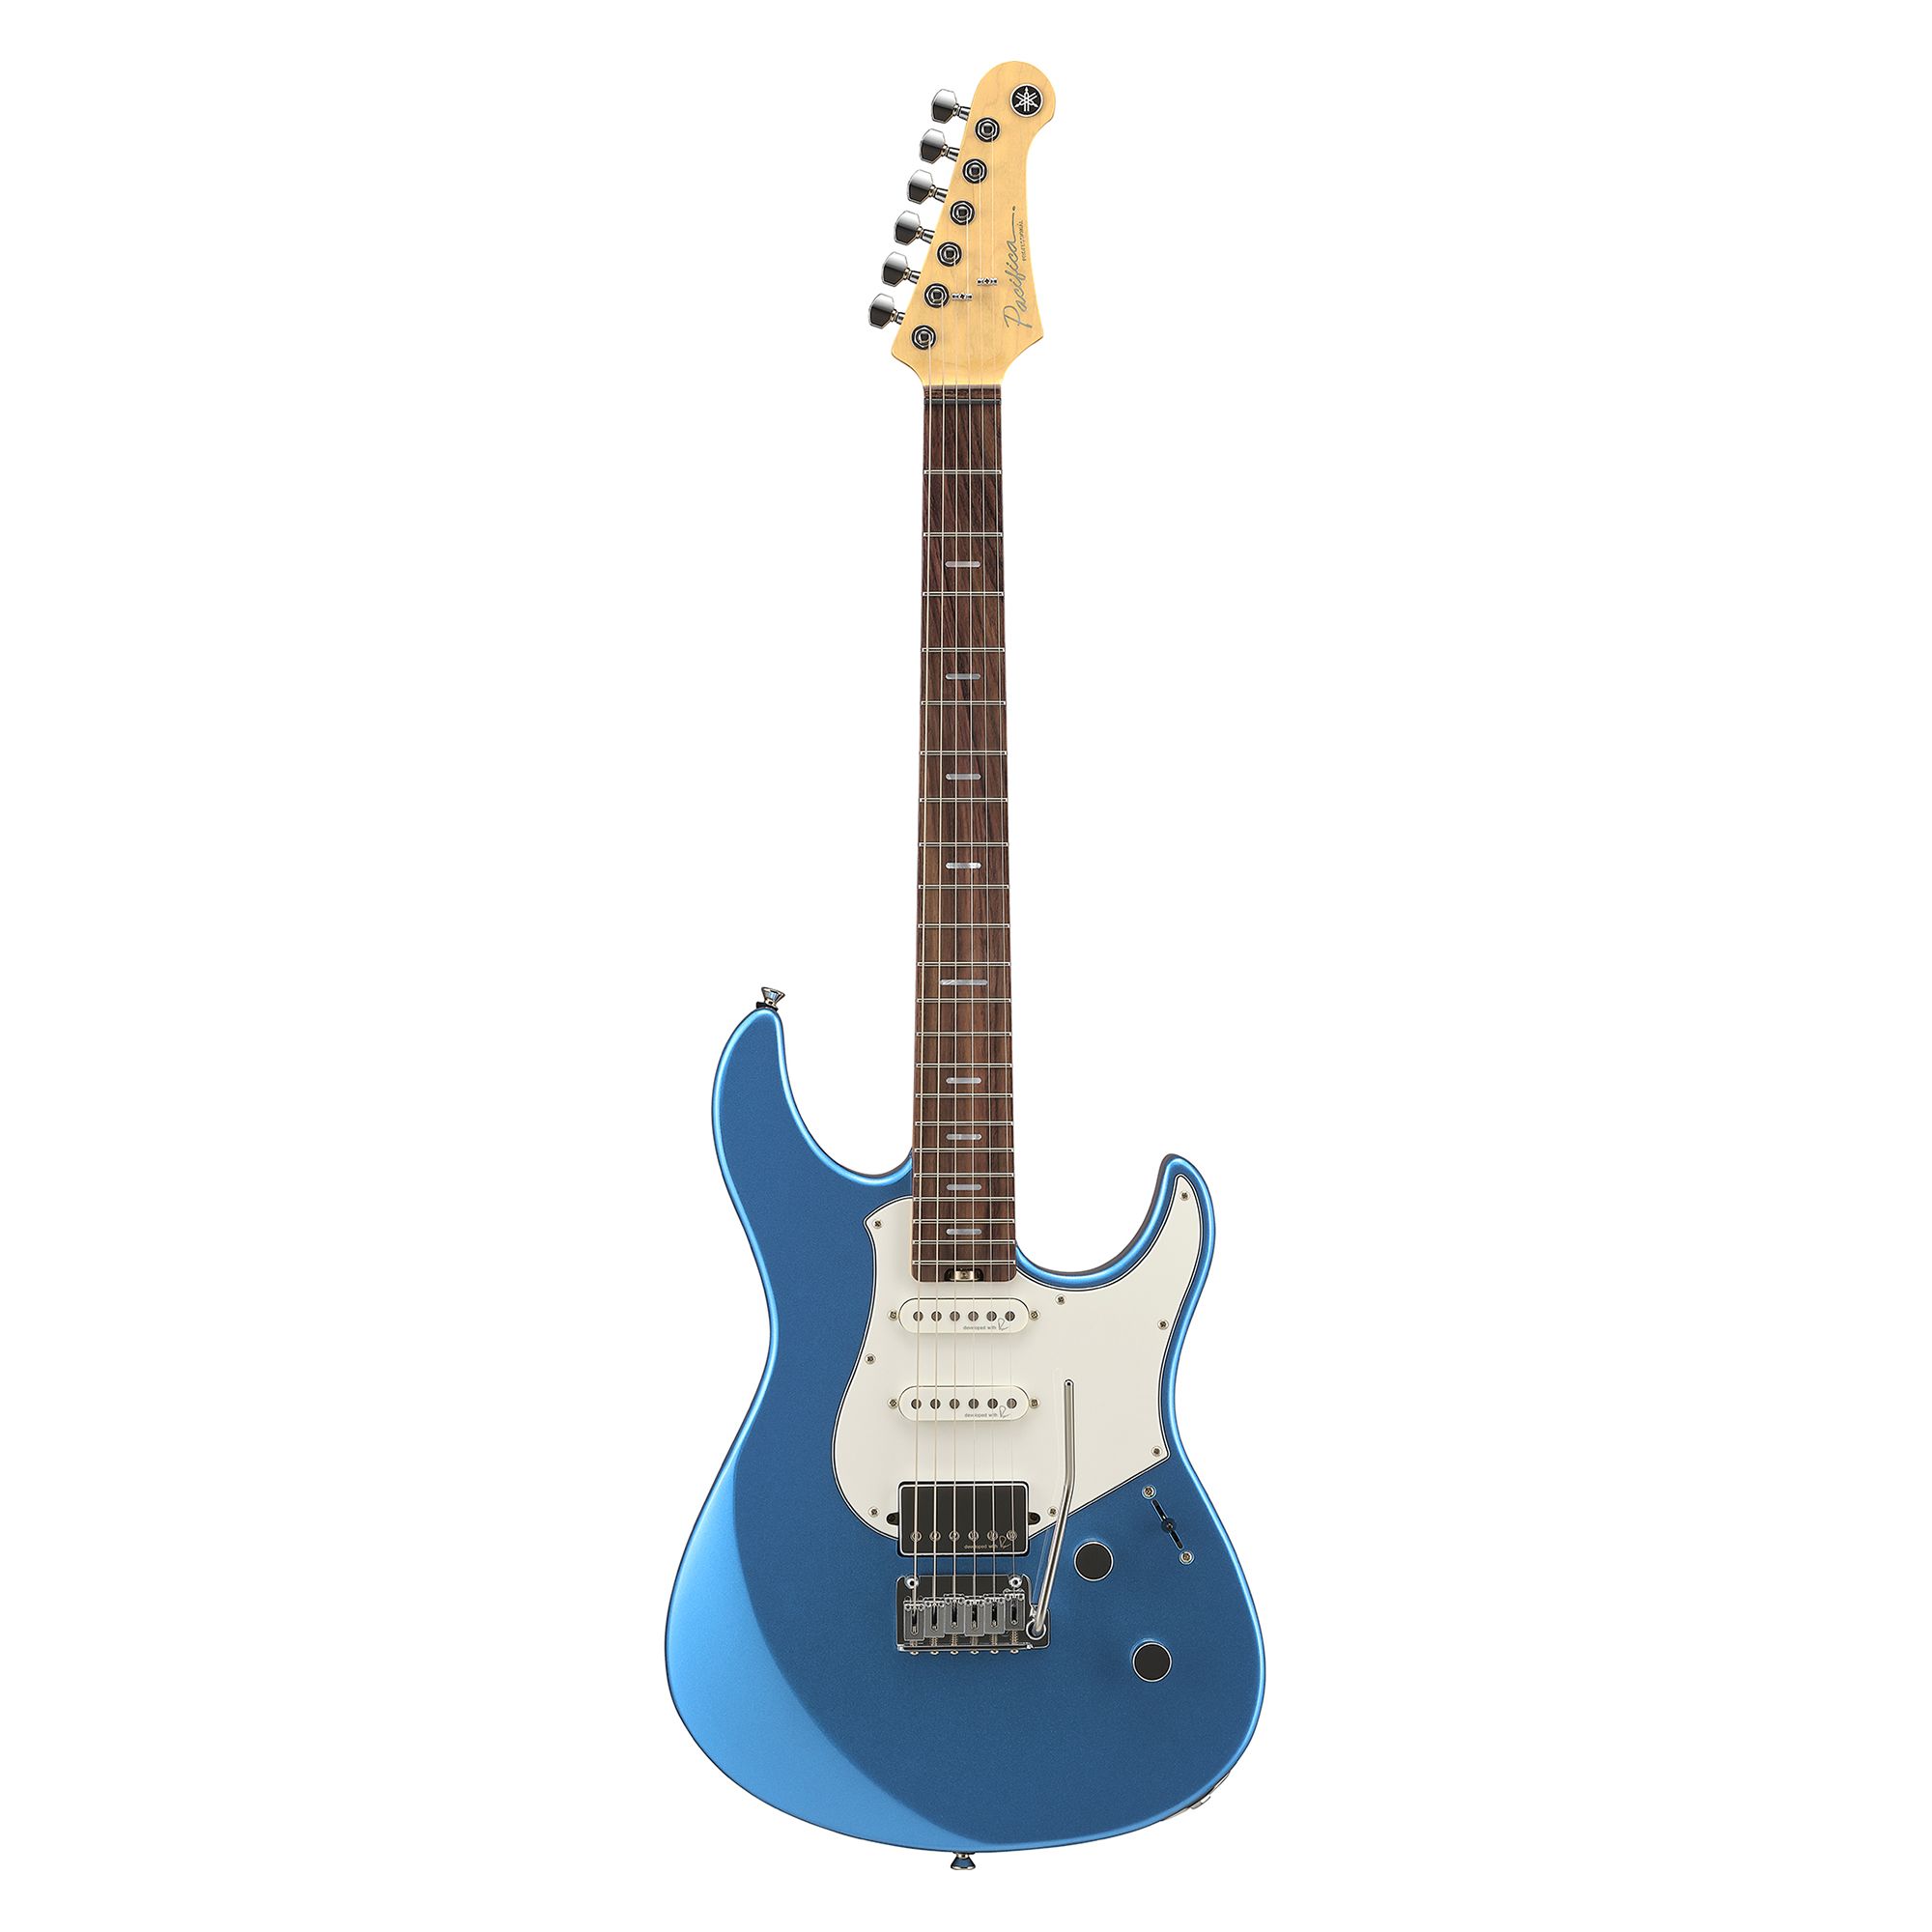 ヤマハ | PACIFICA - エレキギター - PAC600 Series